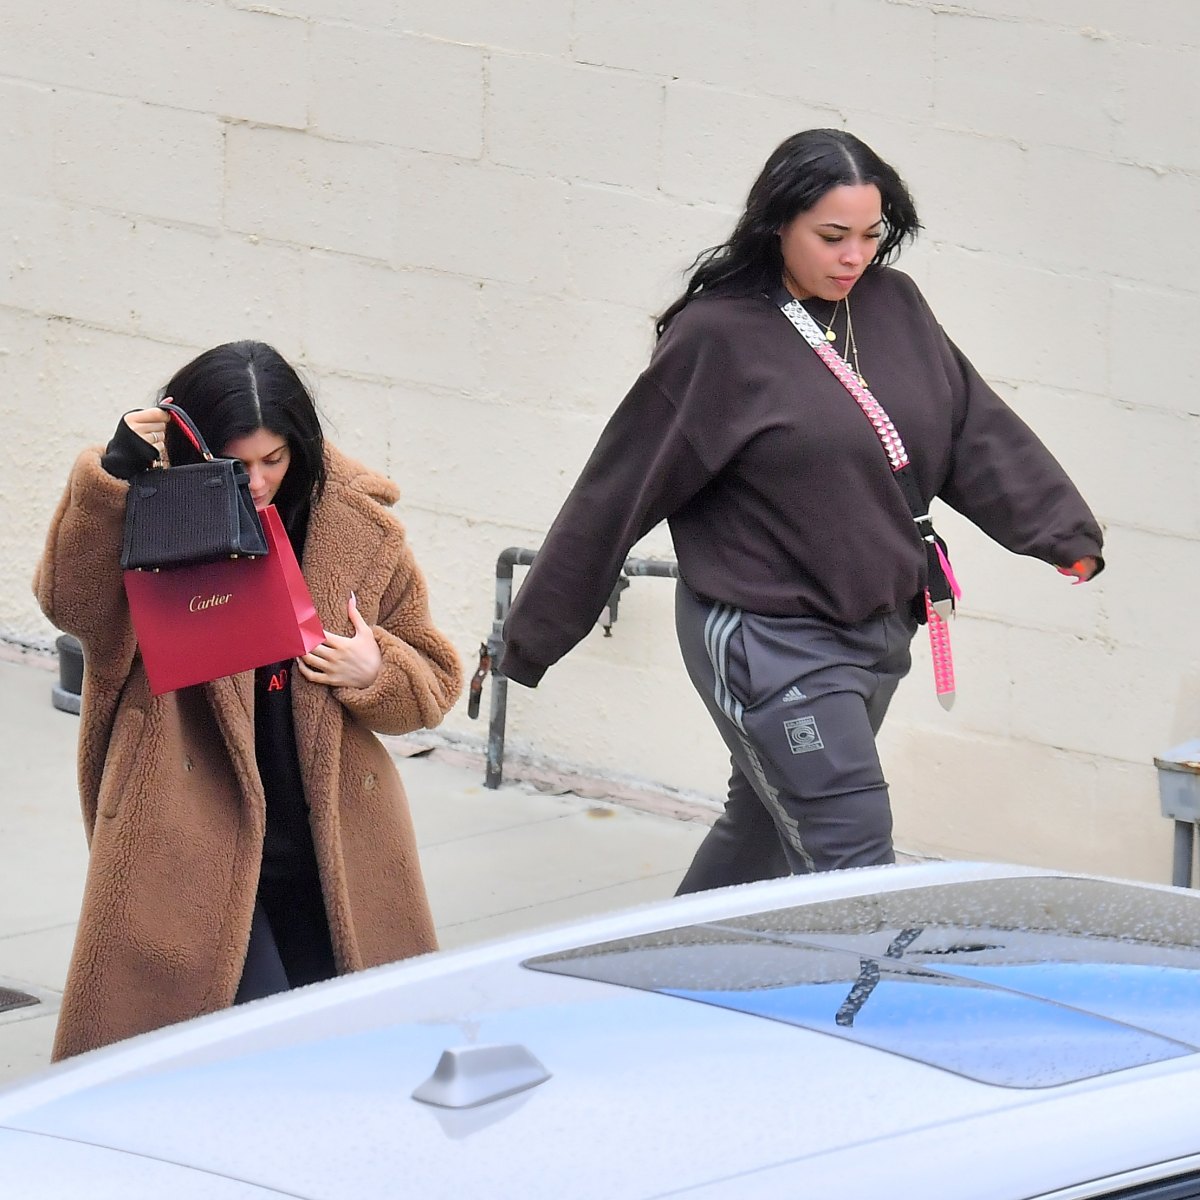 Kylie Jenner goes shopping with Jordyn Woods in LA